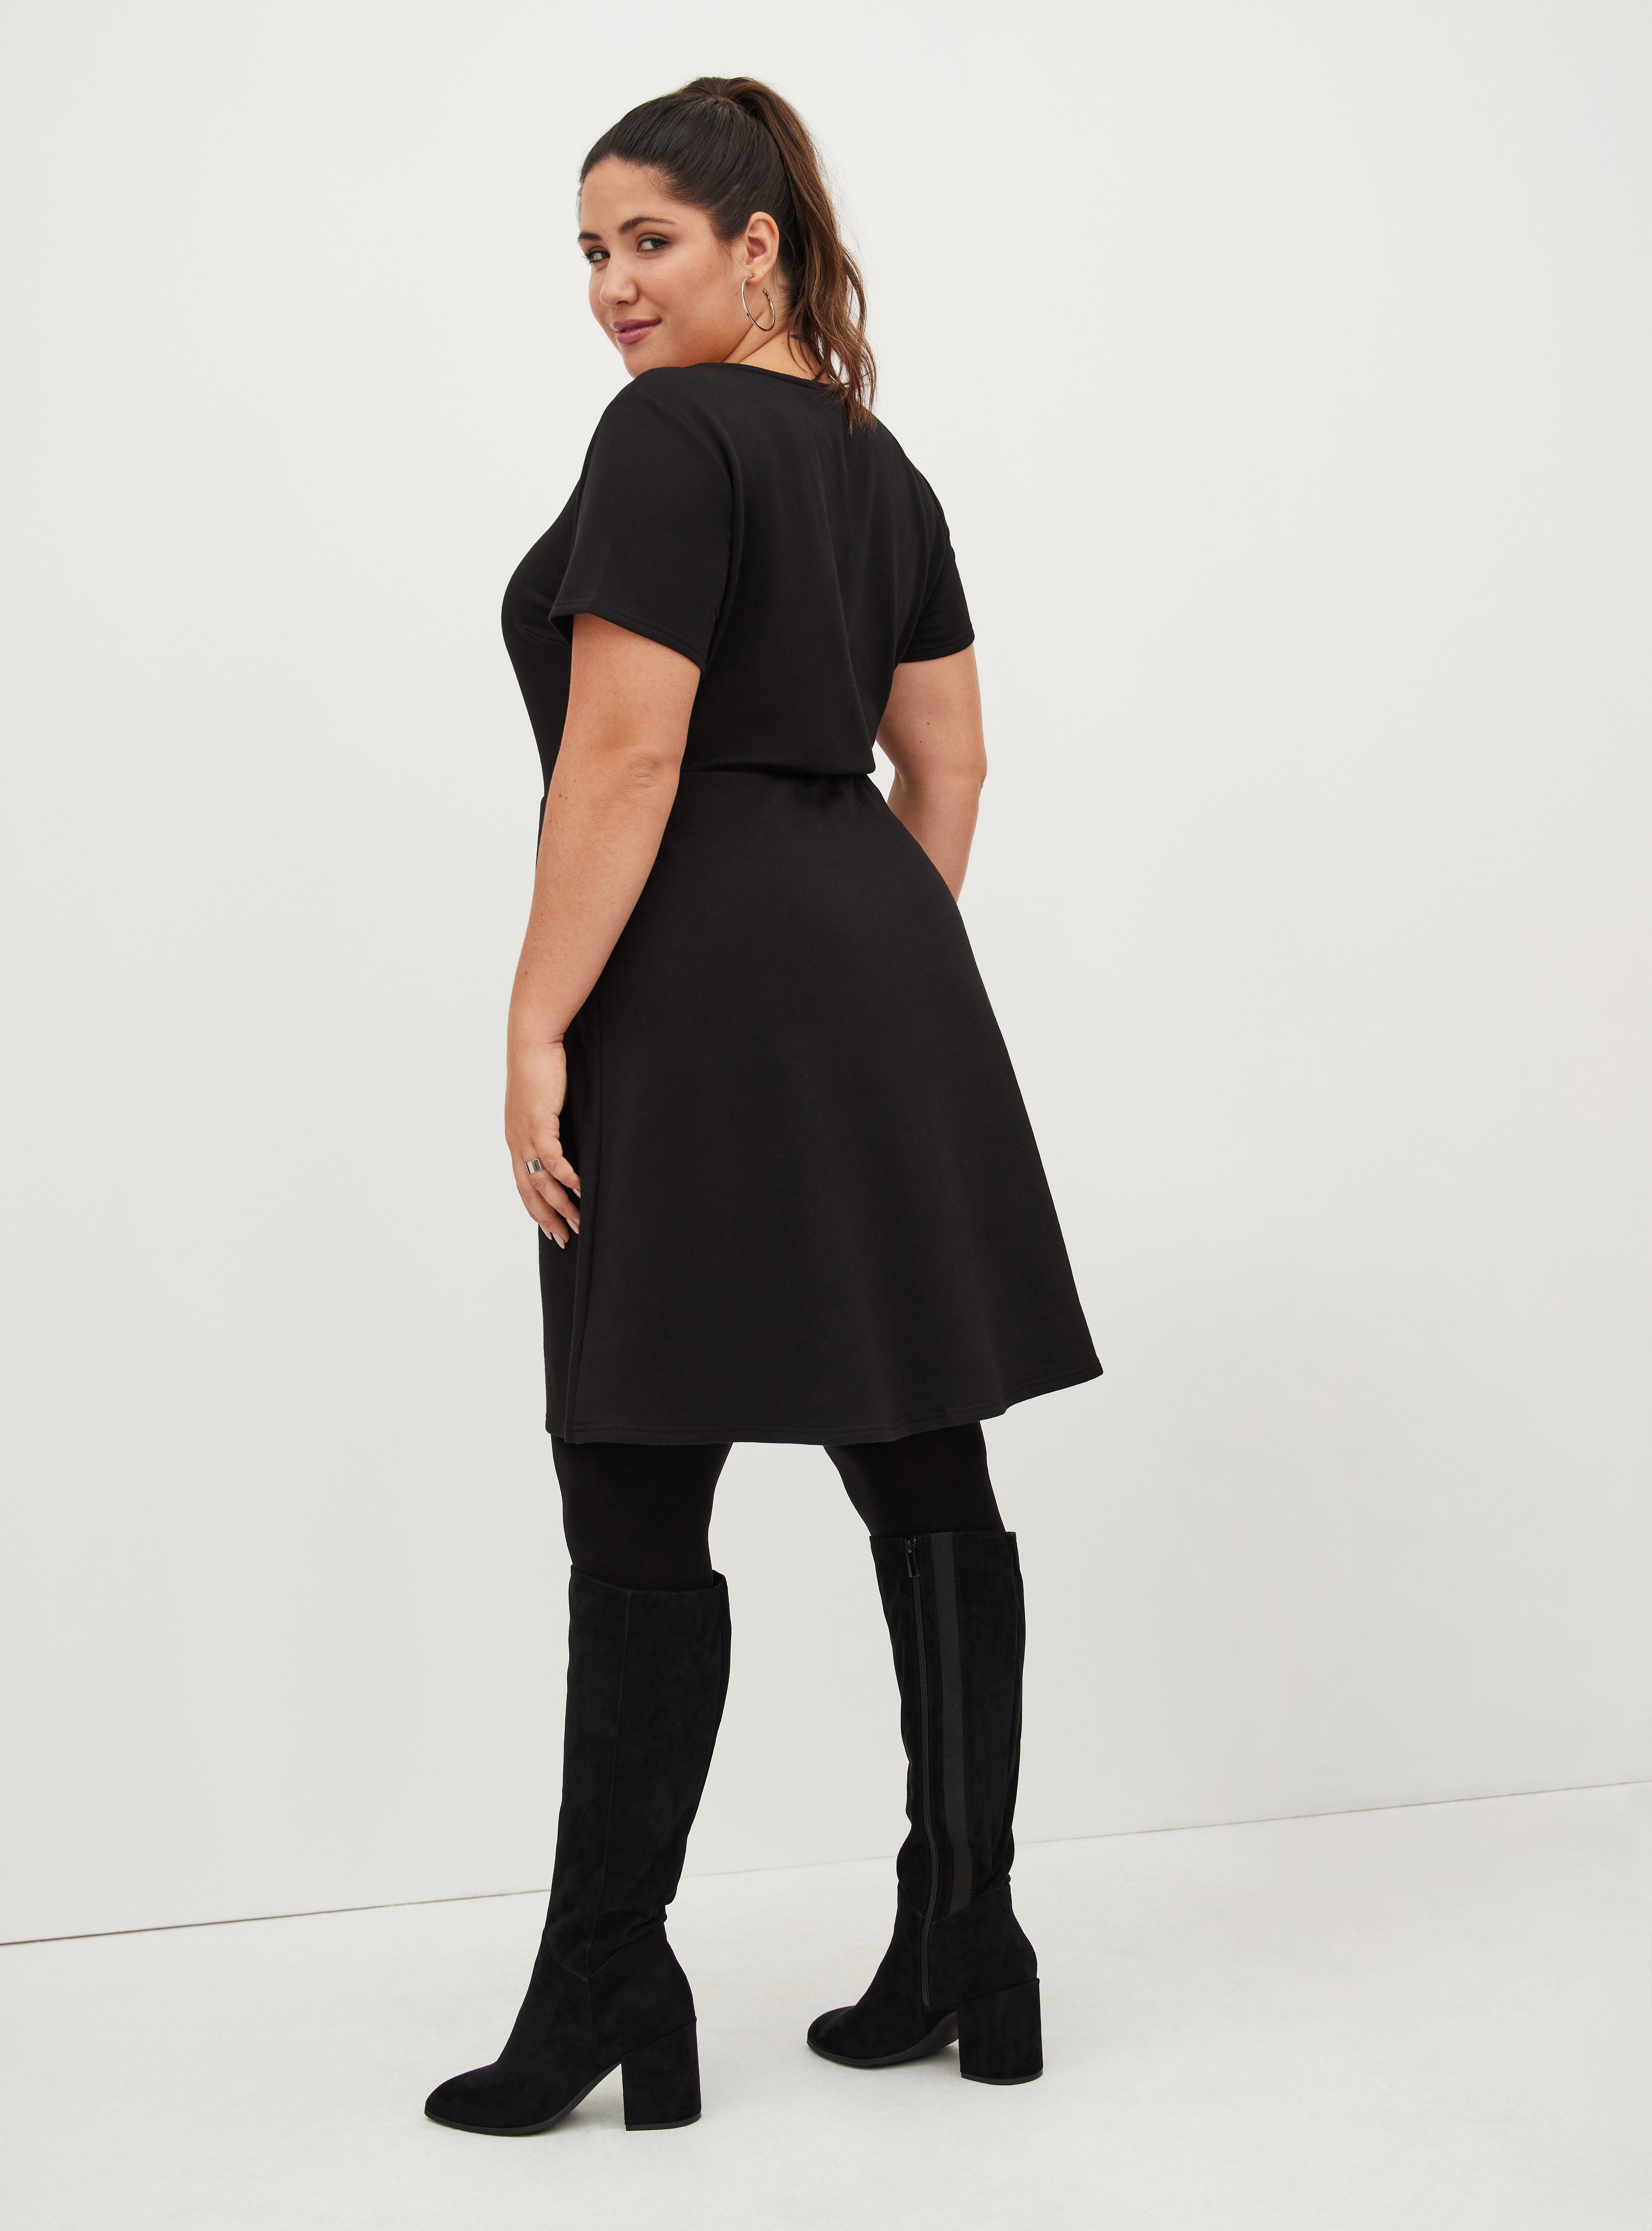 Plus Size - Skater Dress - Ultra Soft Fleece Black - Torrid